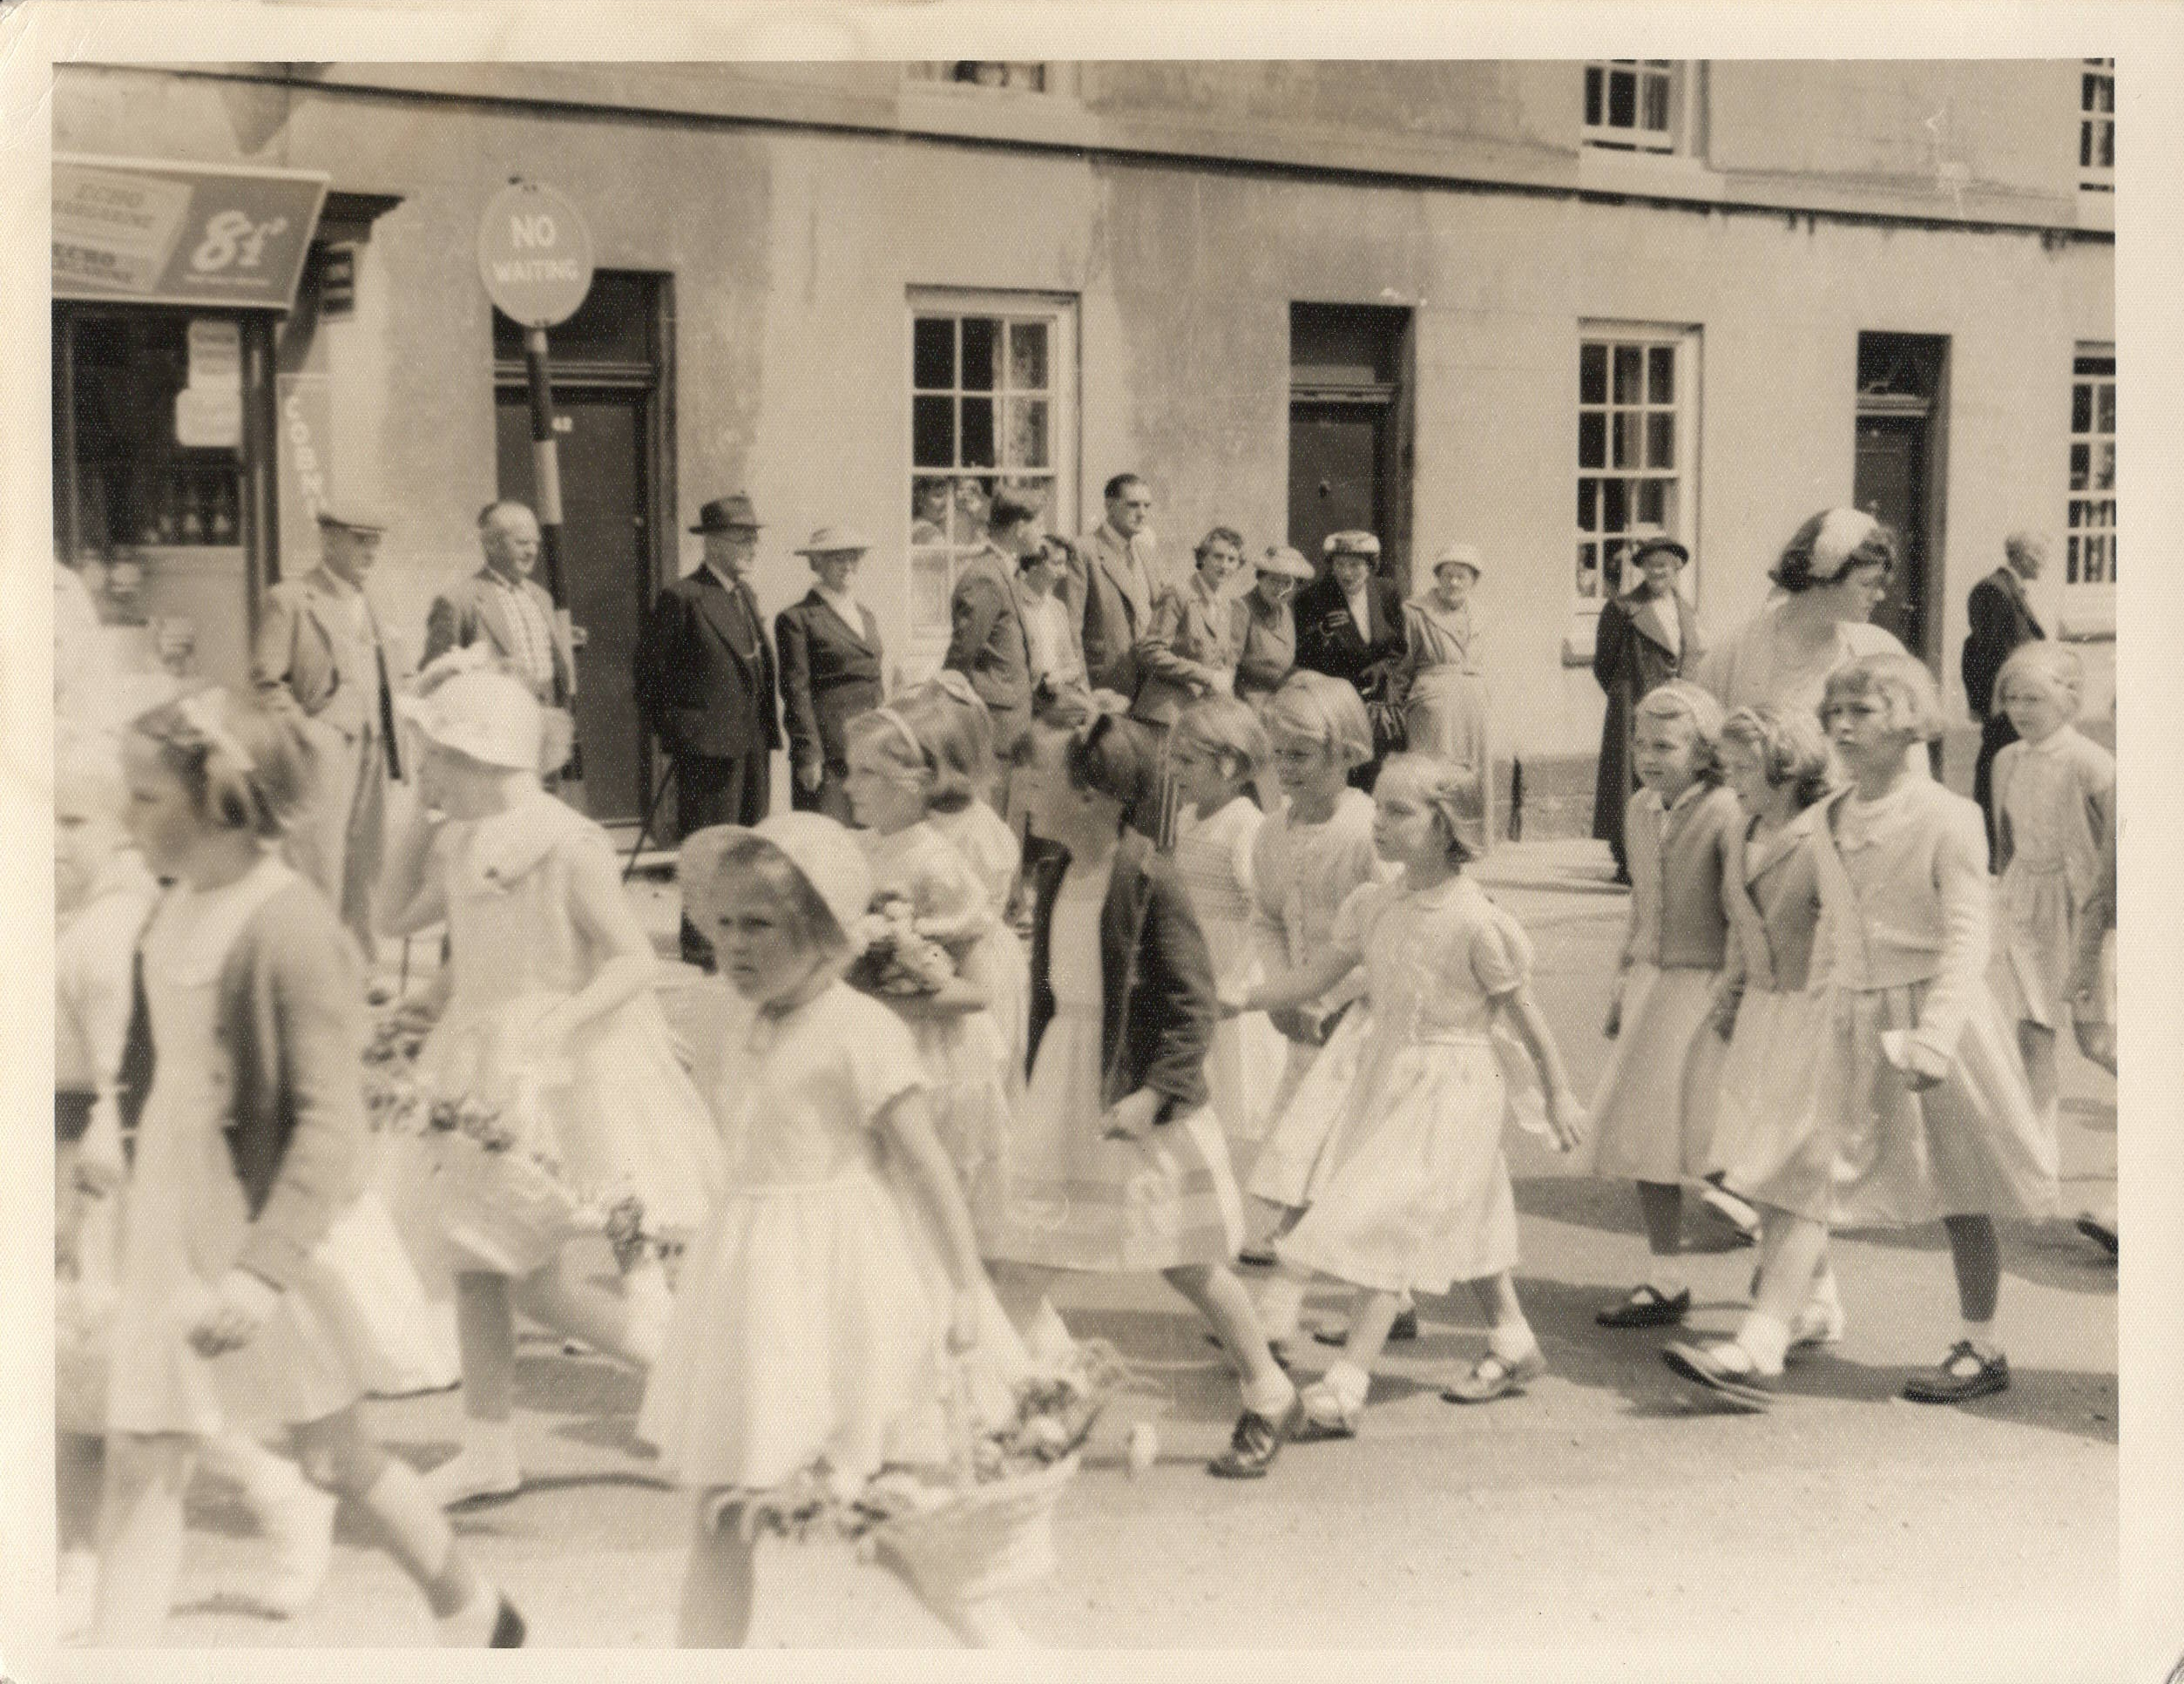 Ormskirk parade 1950s